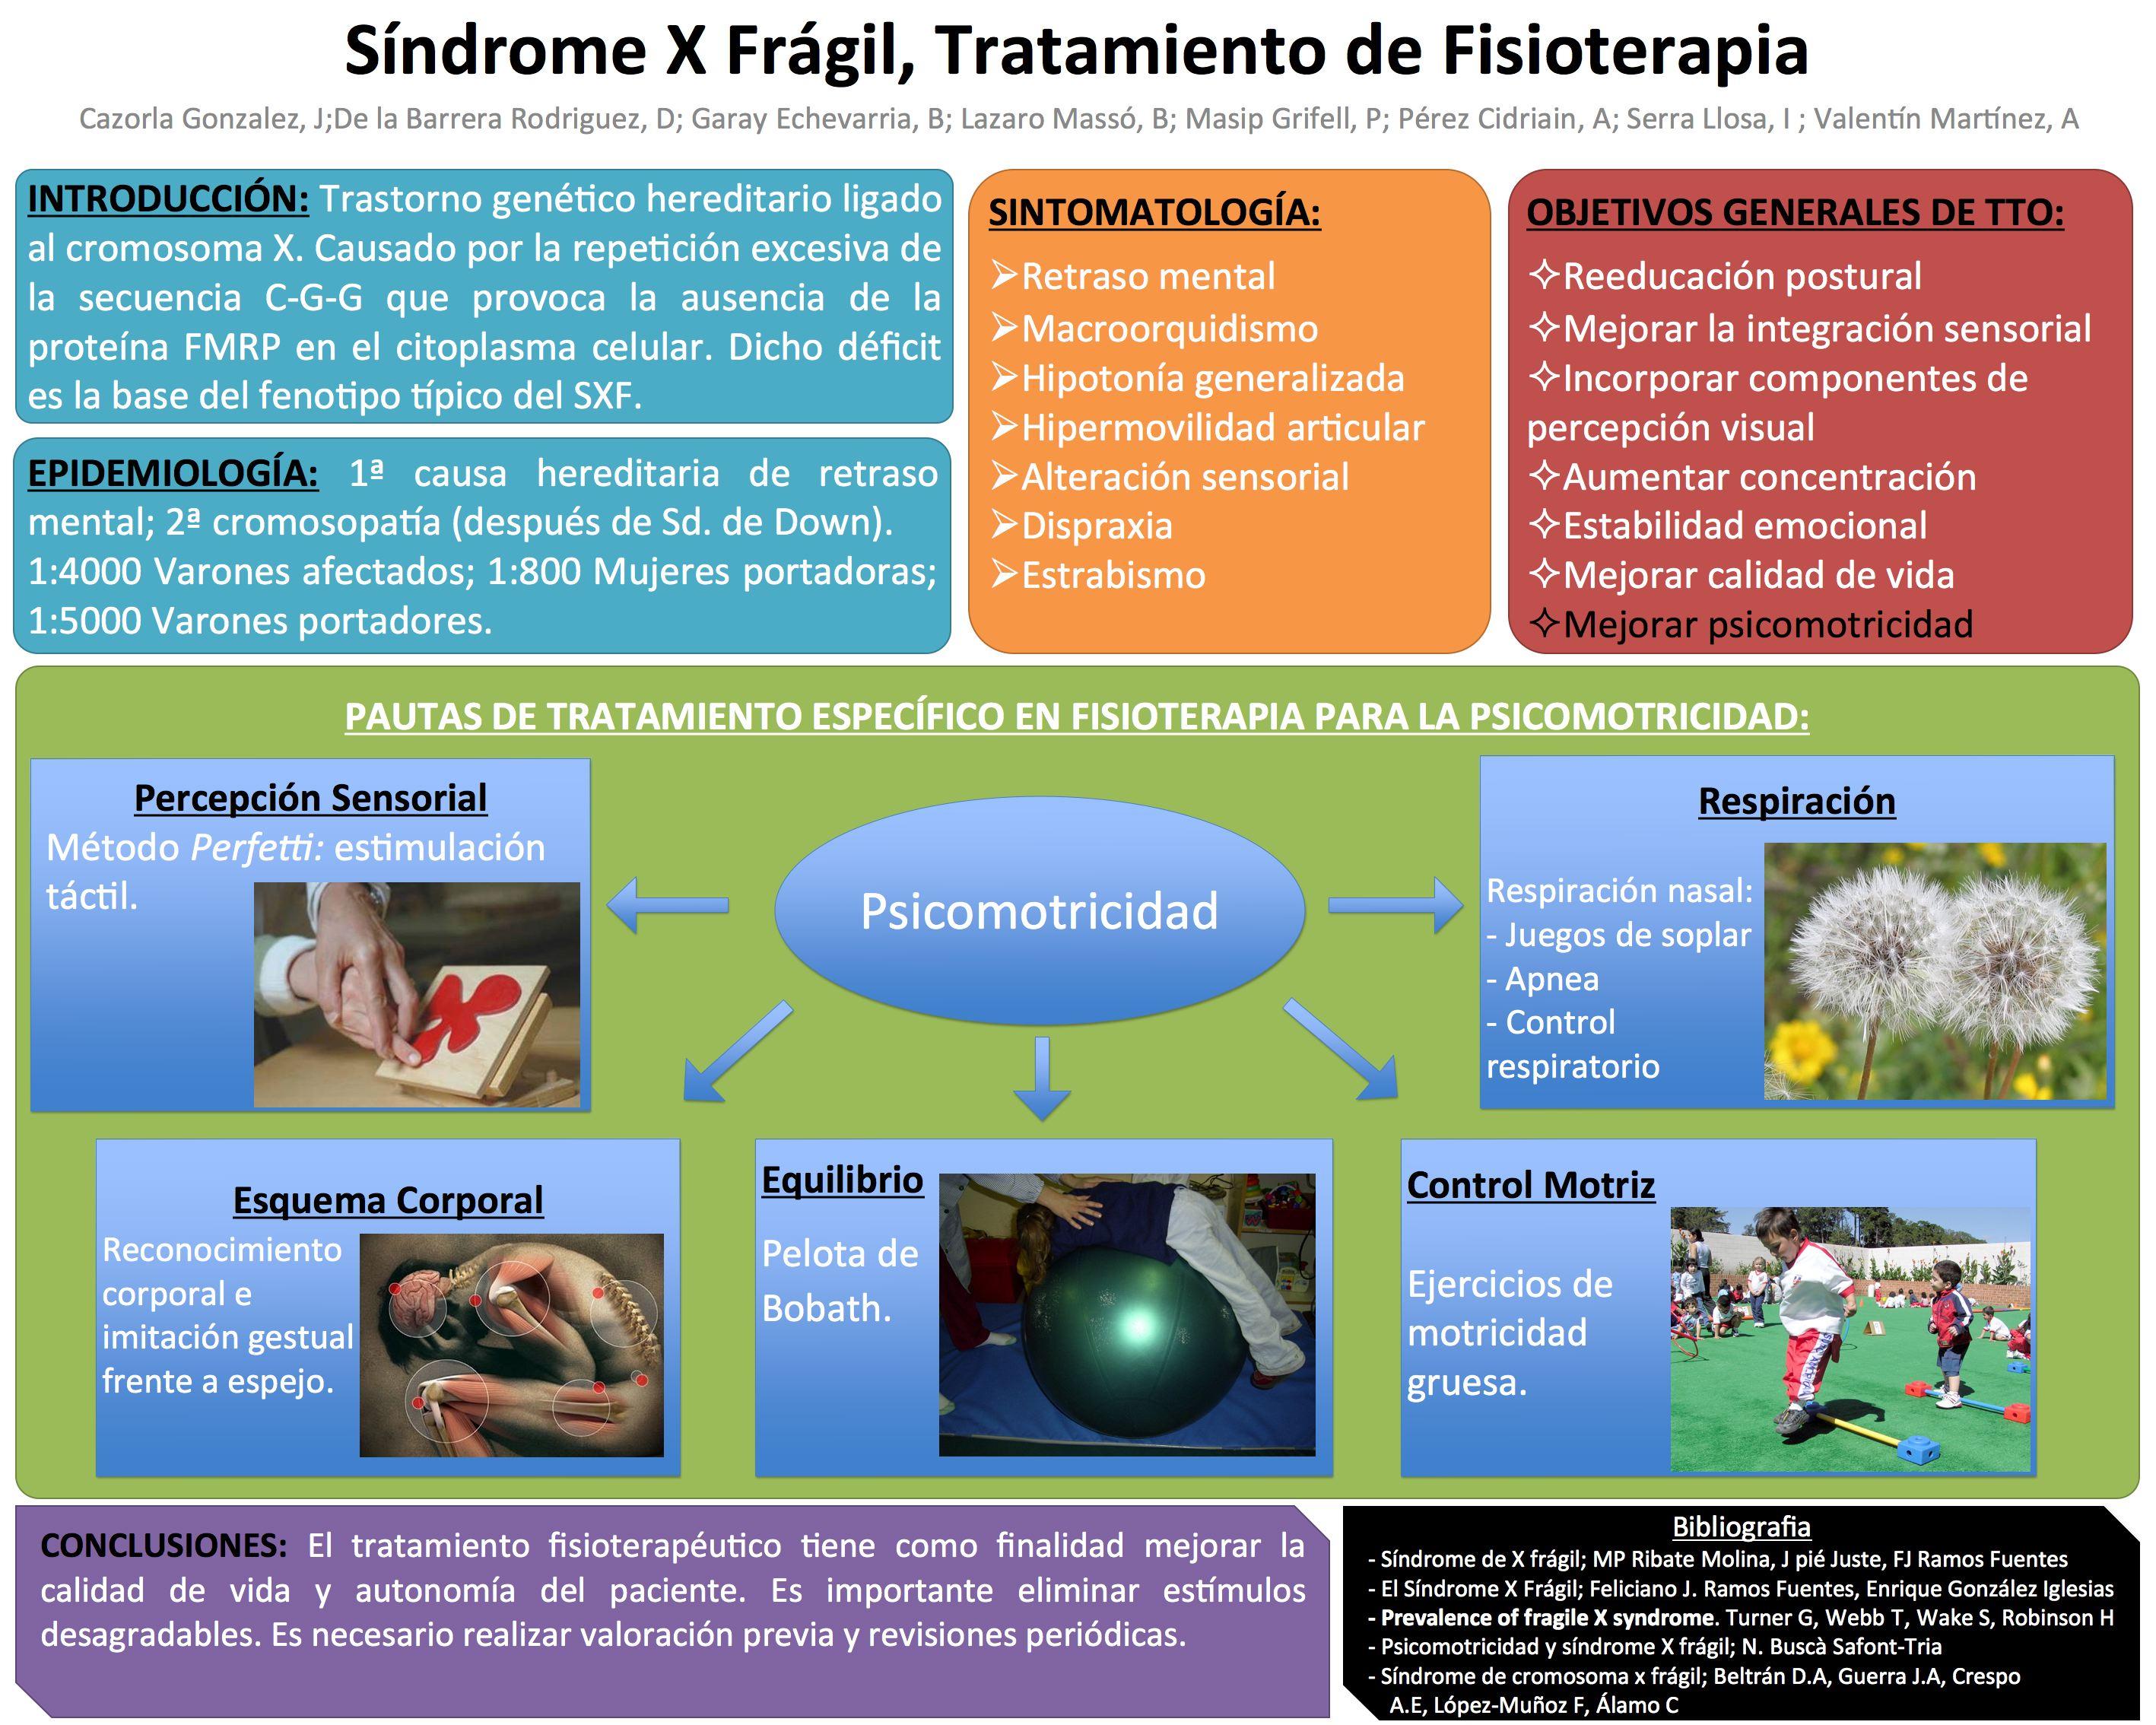 El síndrome del cromosoma X frágil, tratamiento fisioterapéutico